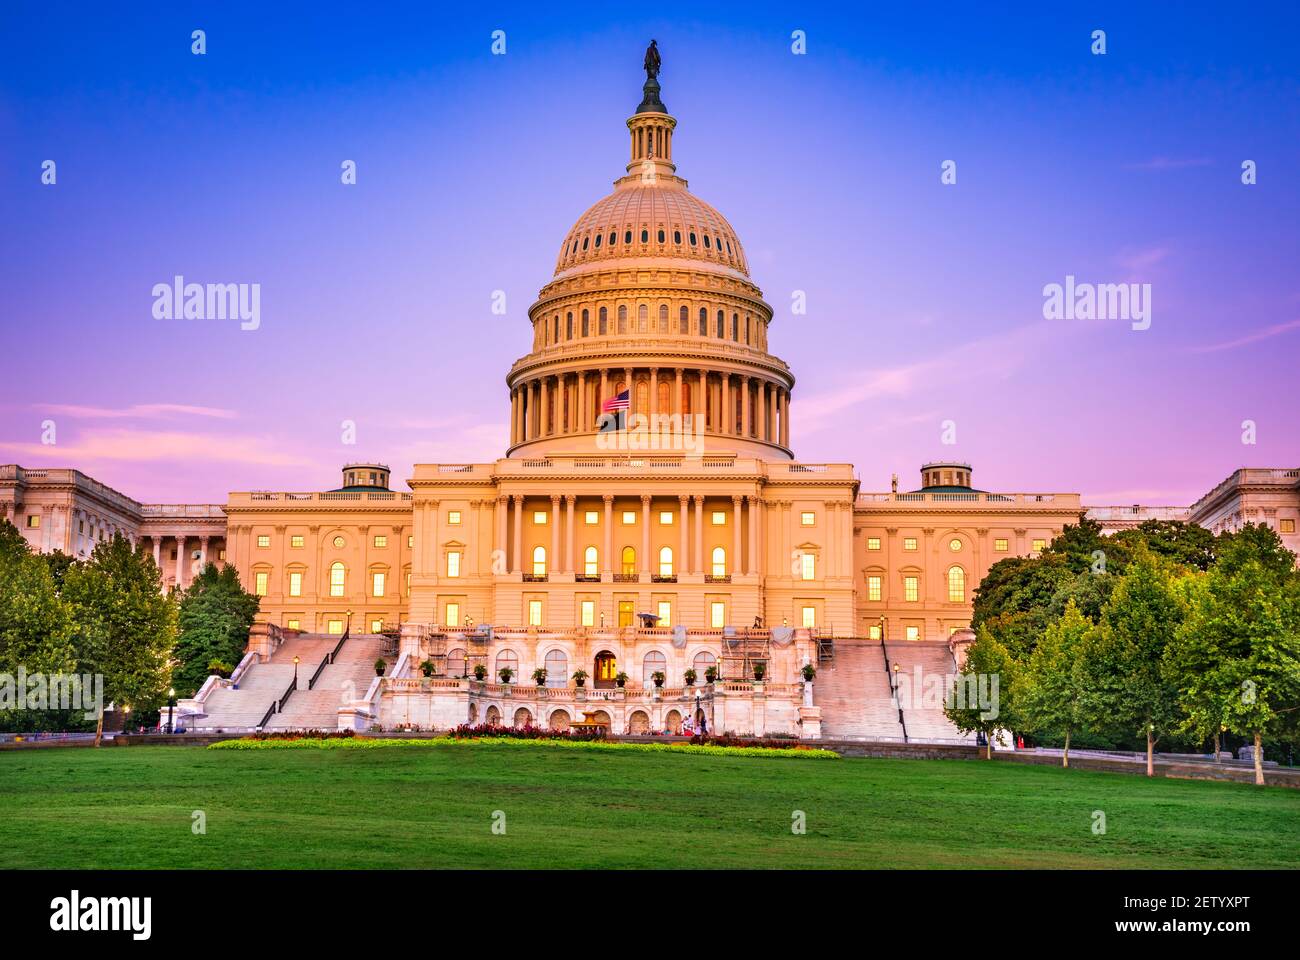 Washington, Estados Unidos - impresionante Capitolio de los Estados Unidos de América Foto de stock